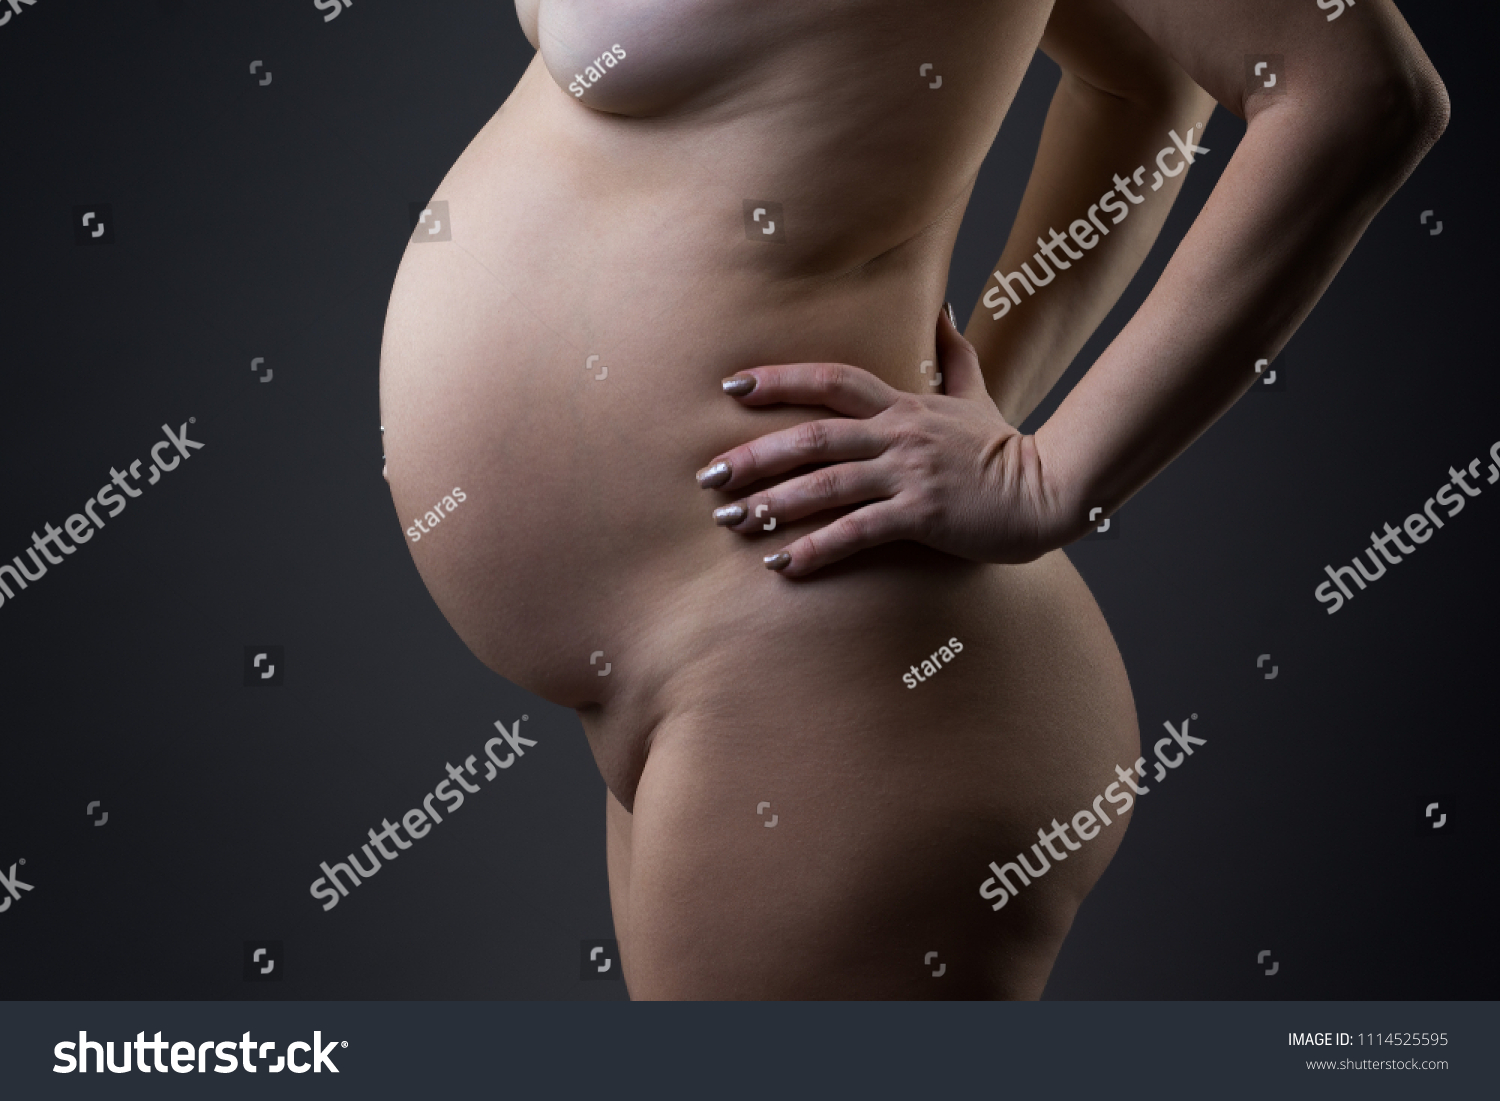 Hot Naked Pregnant Women